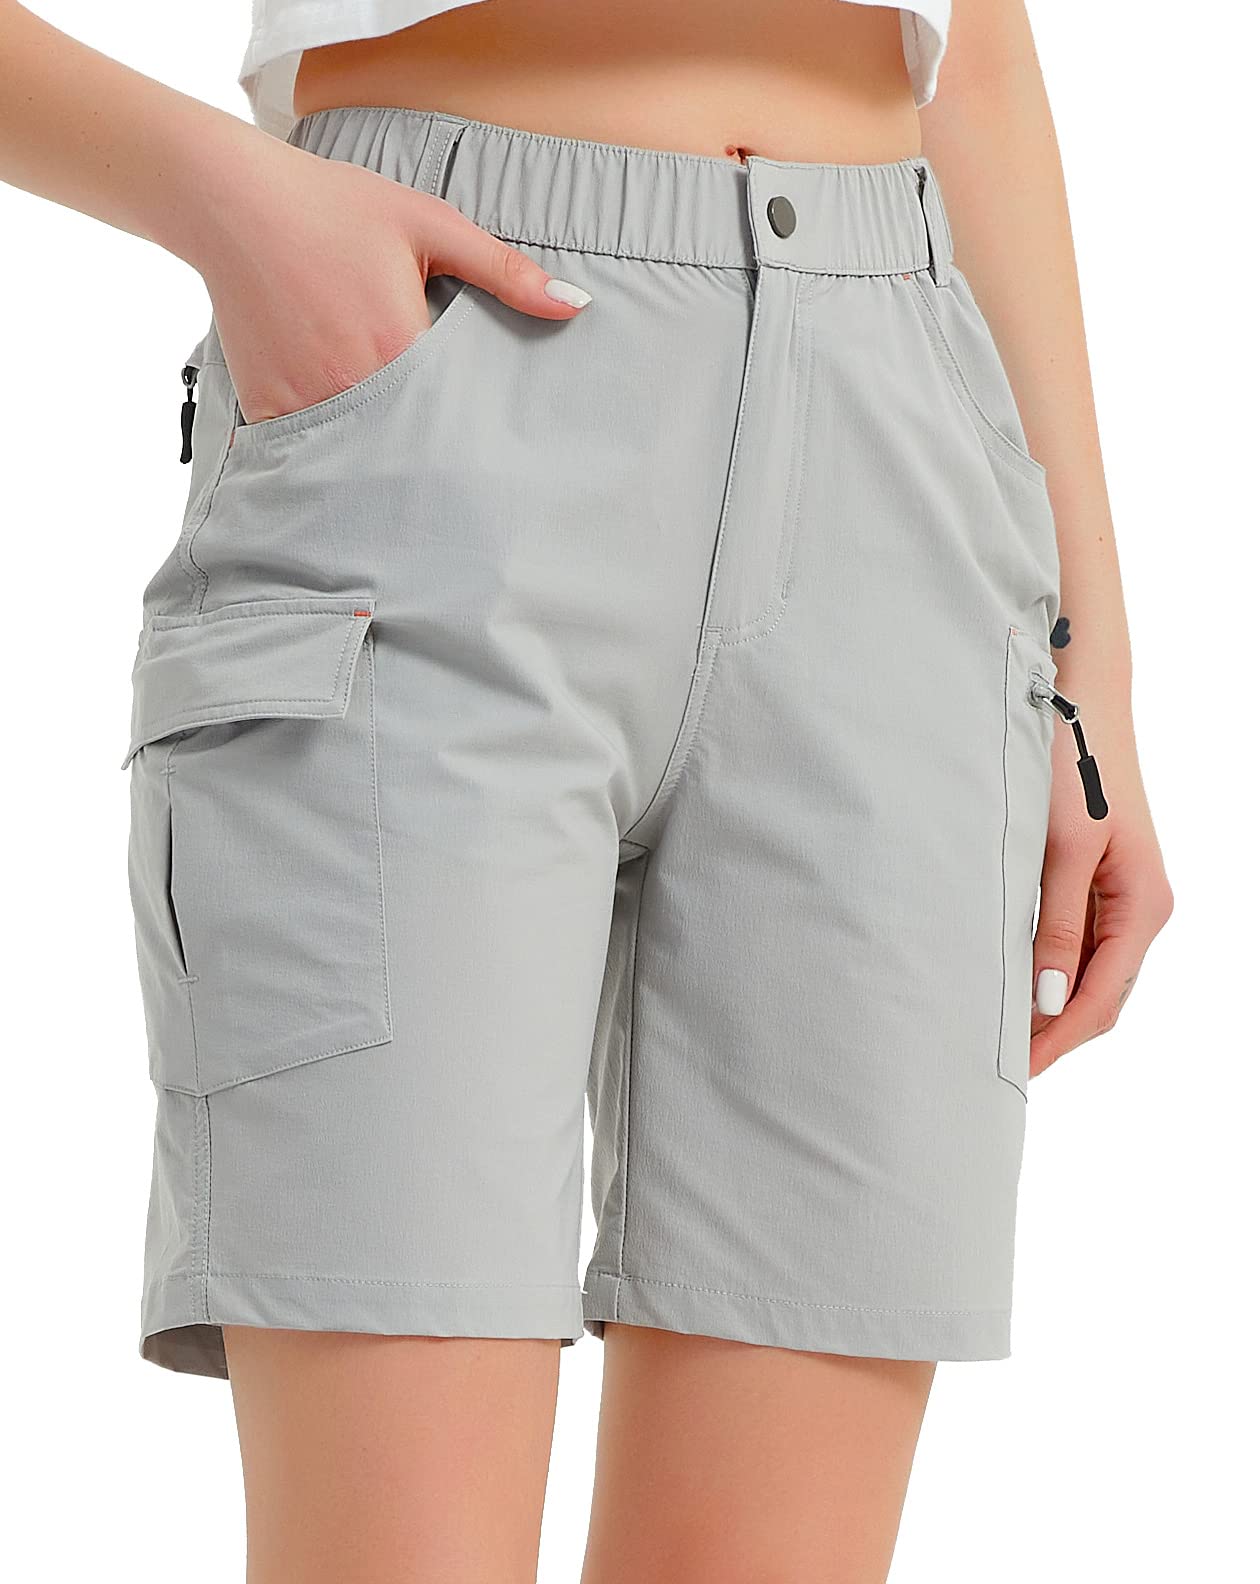 Nomolen Women's Hiking Cargo Shorts Lightweight Quick Dry Outdoor Golf  Travel Shorts for Women with Zipper